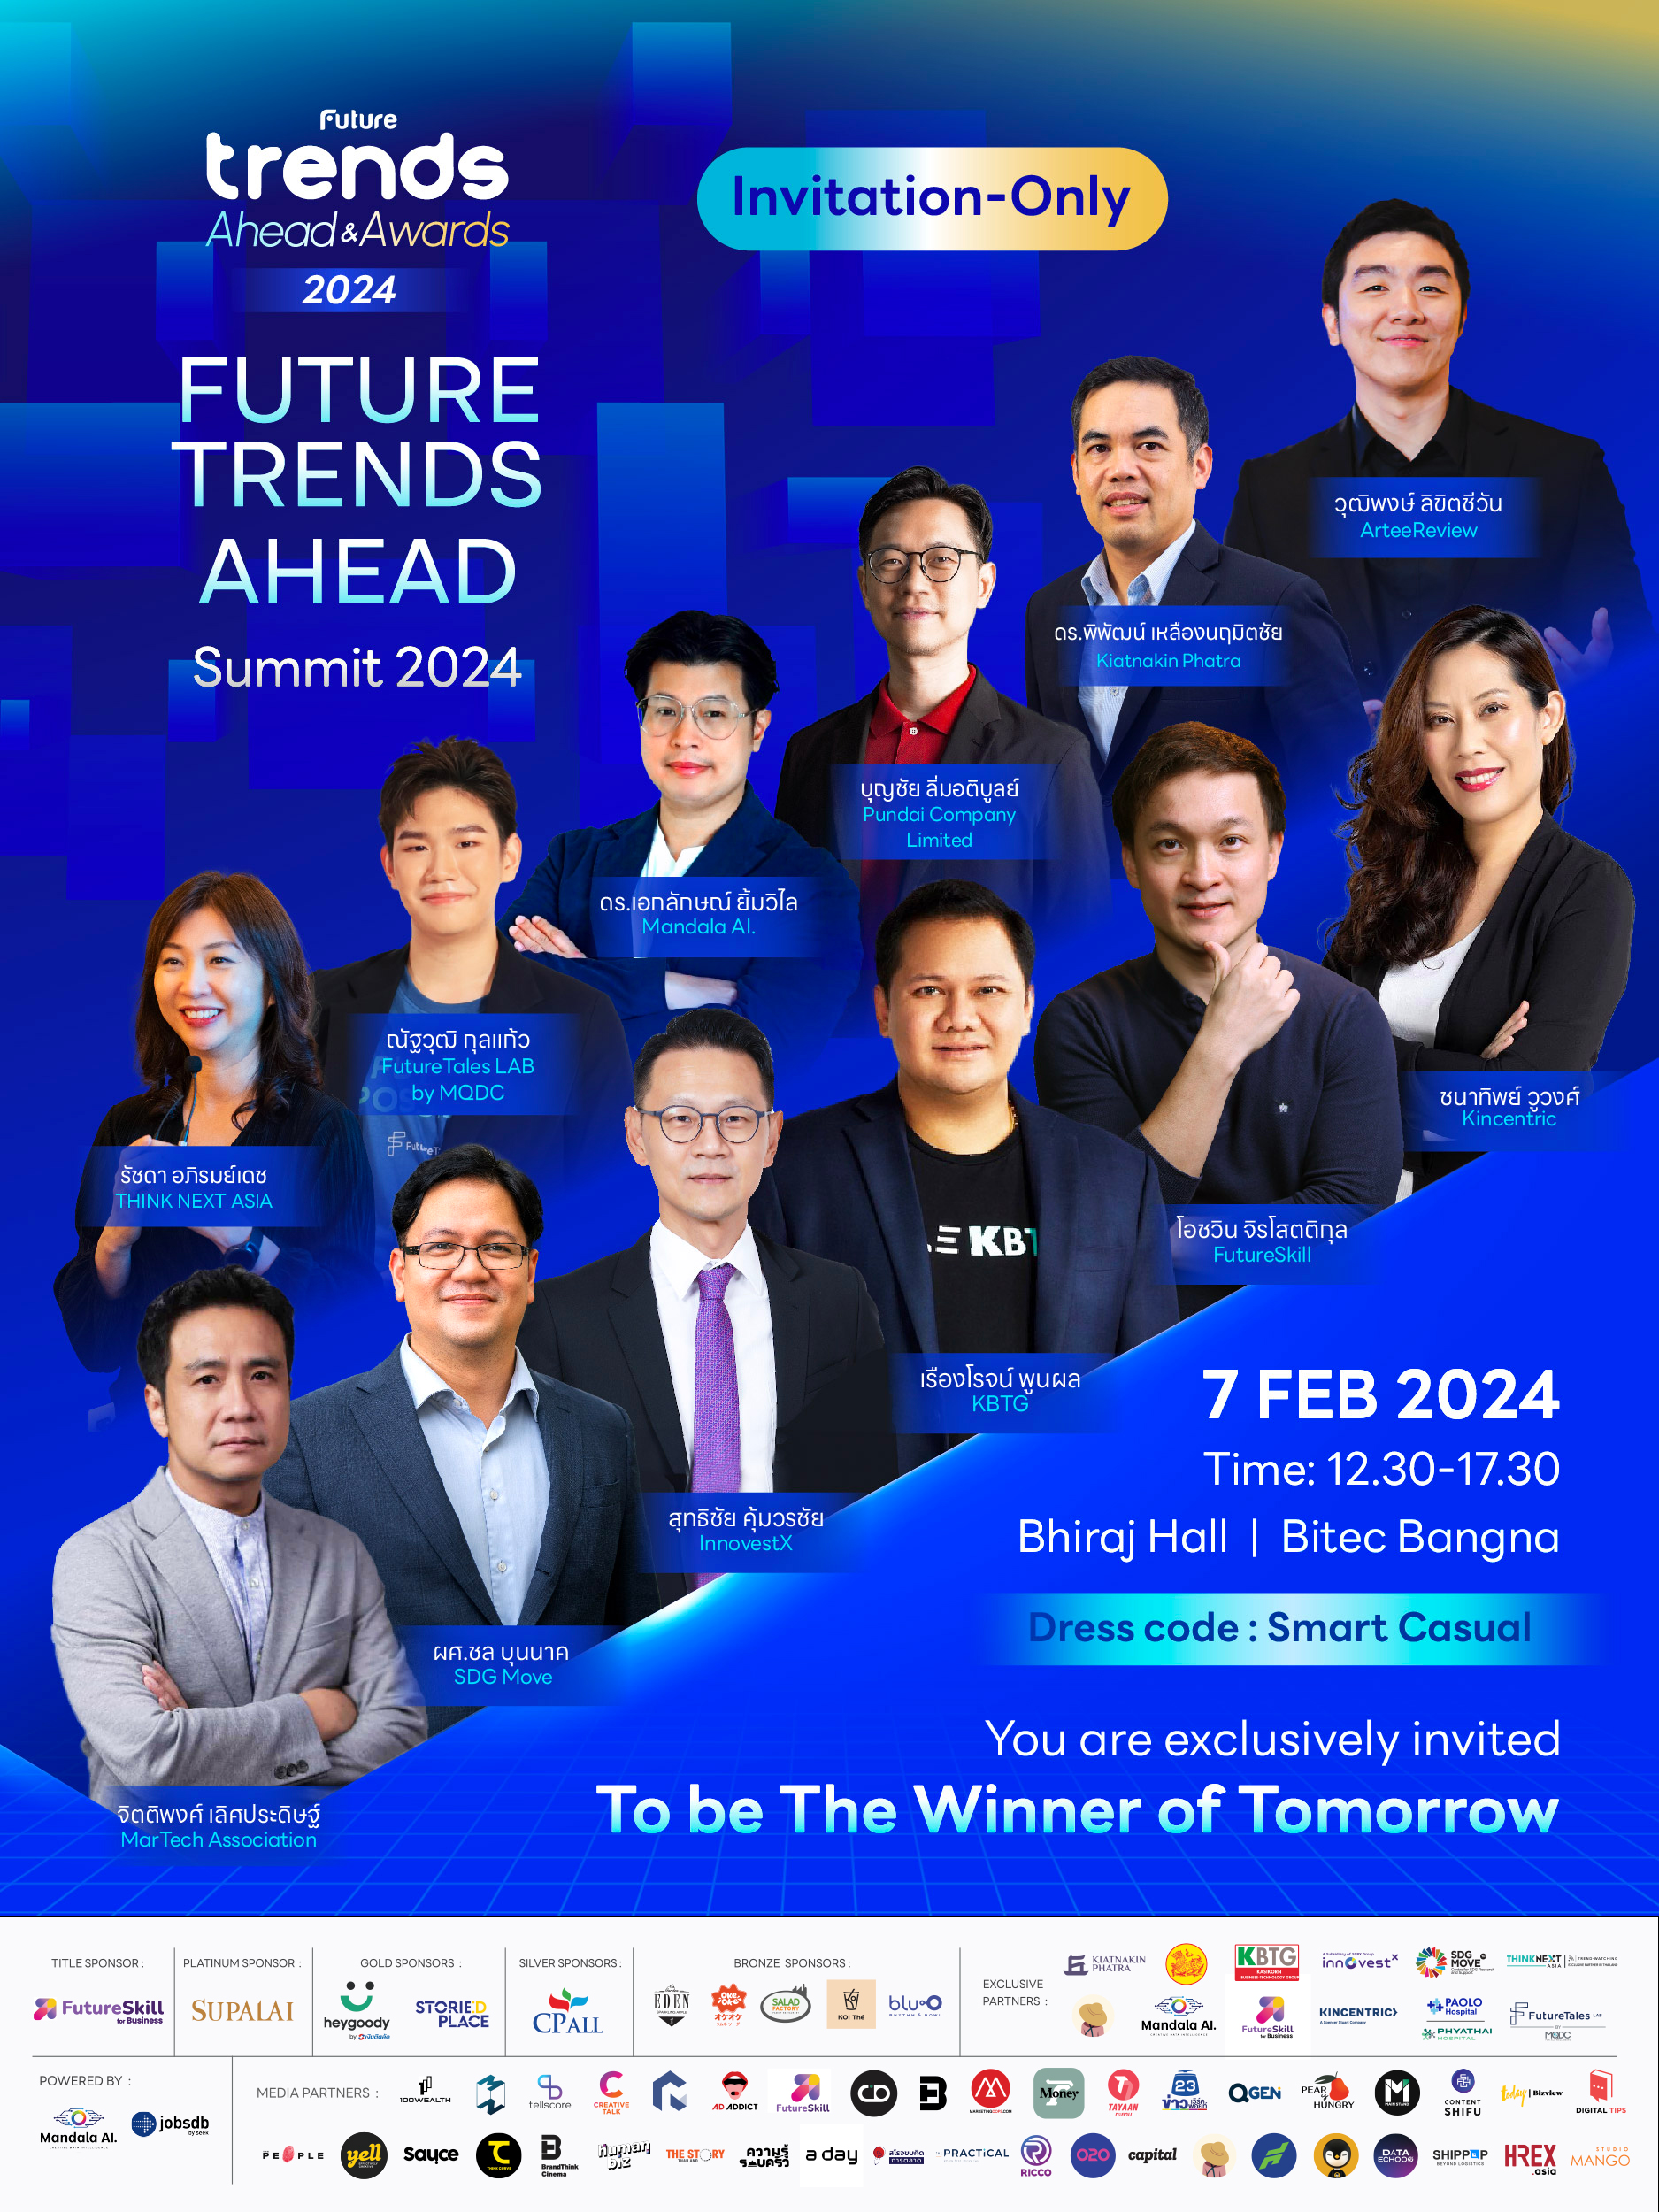 บทสรุปเทรนด์ที่น่าจับตา จากเวที FUTURE TRENDS AHEAD SUMMIT 2024 โอกาสและความท้าทาย ของธุรกิจเพื่อรับมือกับอนาคต 